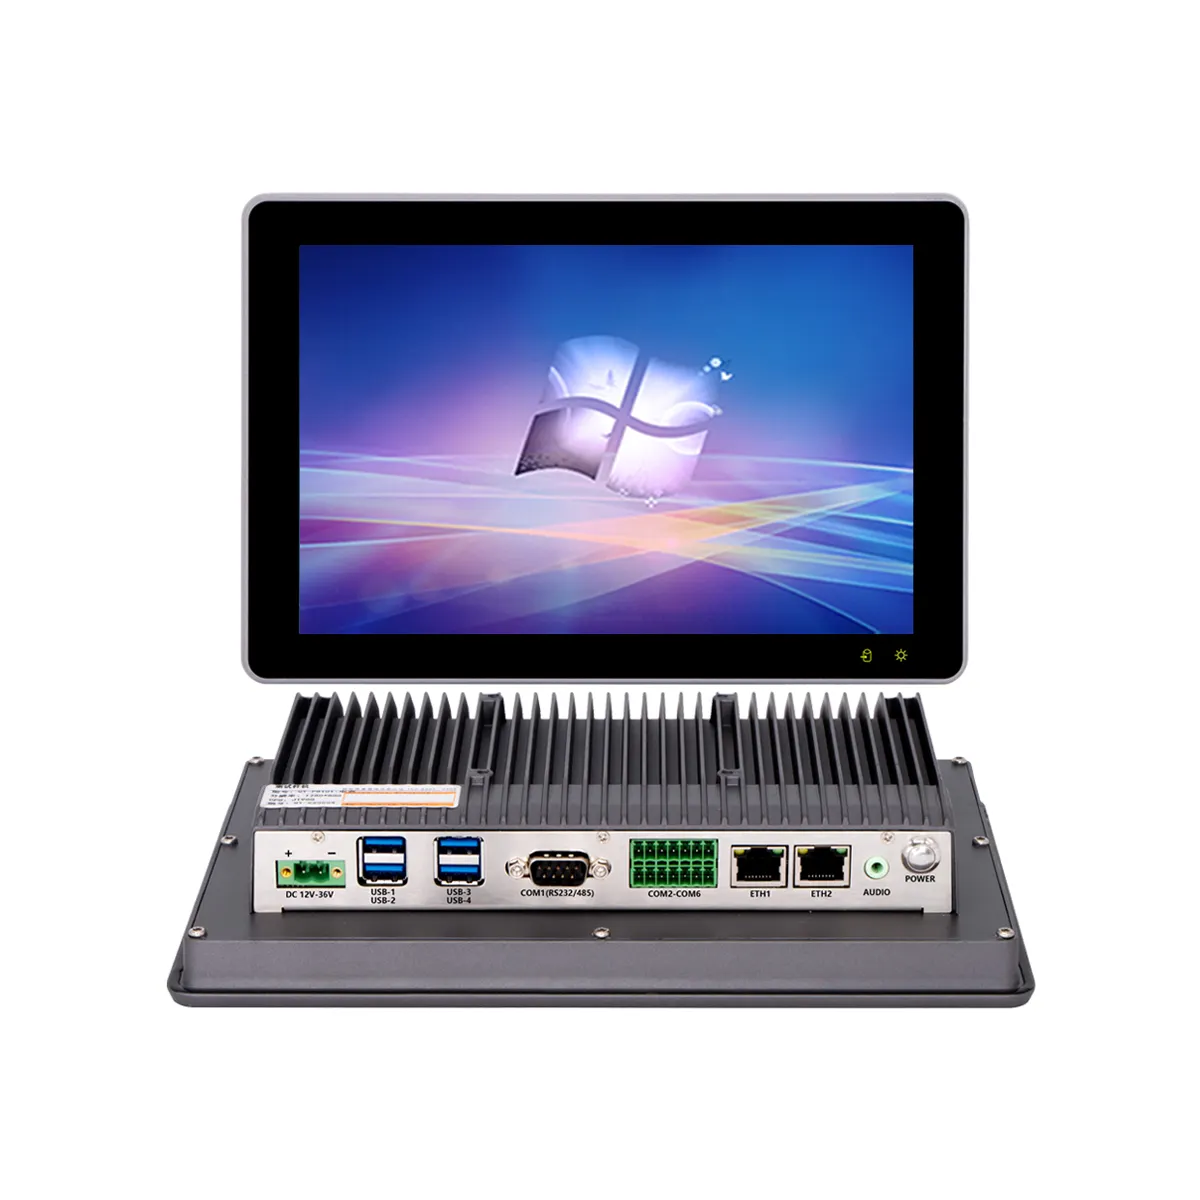 Tela lcd integrada robusta para computador, tablet ip65 de 10.1 polegadas, janela linux, Android, tudo em um painel industrial